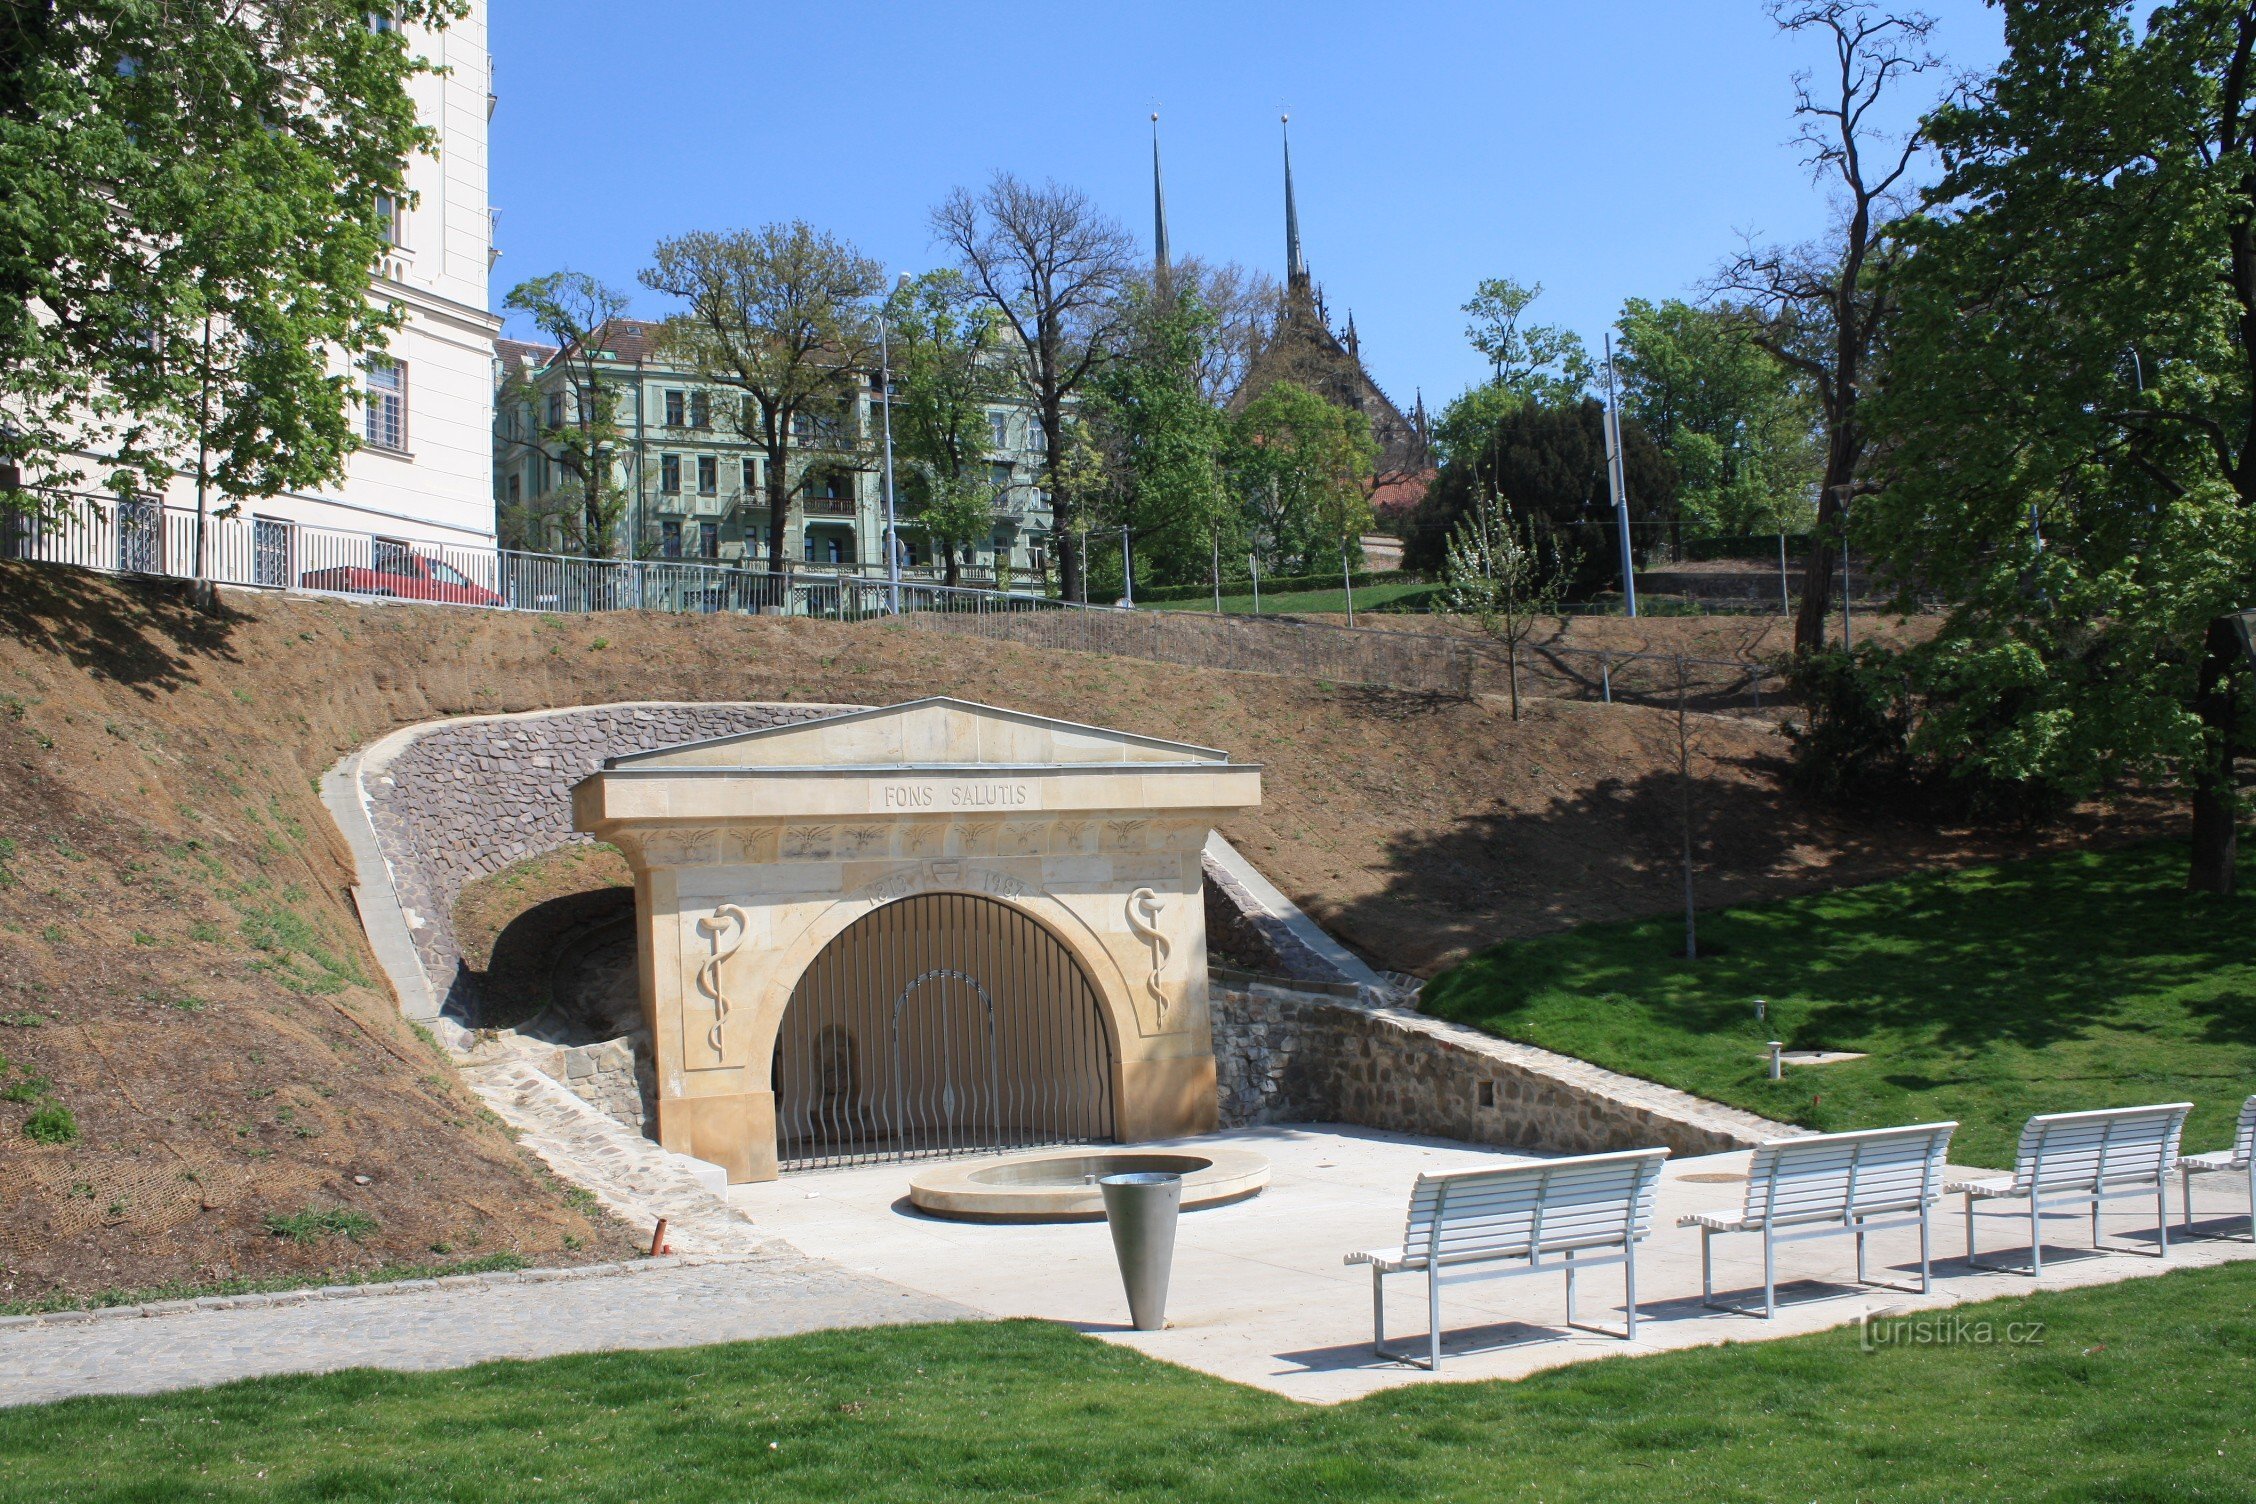 Parcul Studánka după revitalizare cu obiectul în stil imperiu Fântâna Sănătății (Fons Salutis)